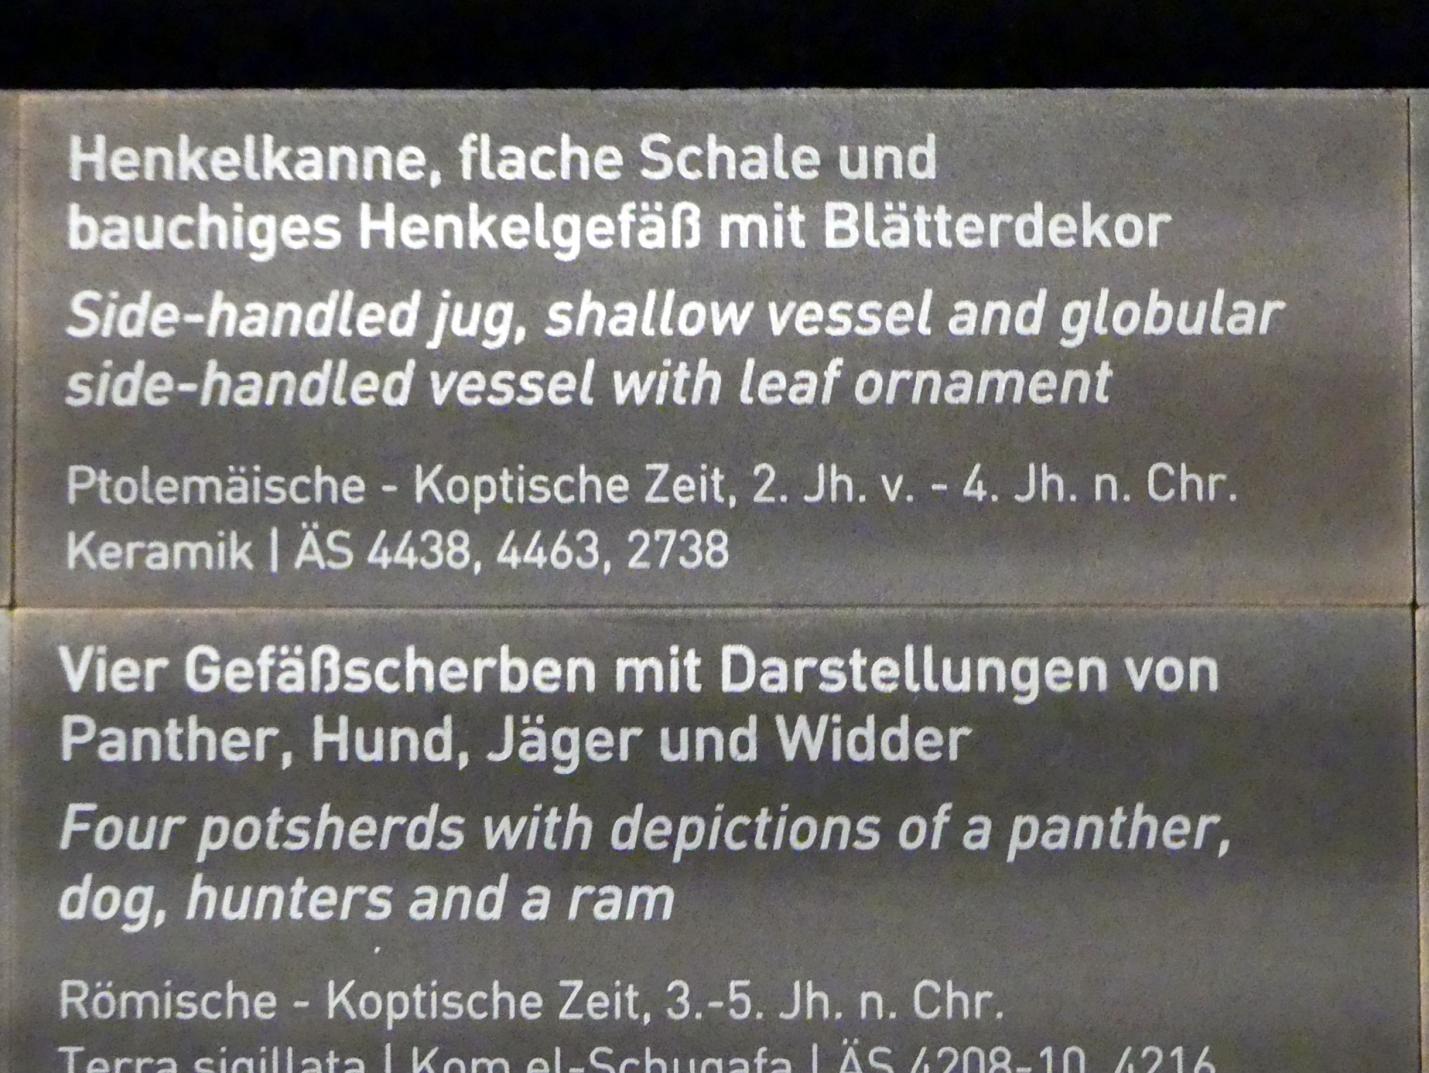 Bauchiges Henkelgefäß mit Blätterdekor, 200 v. Chr. - 400 n. Chr., Bild 2/2